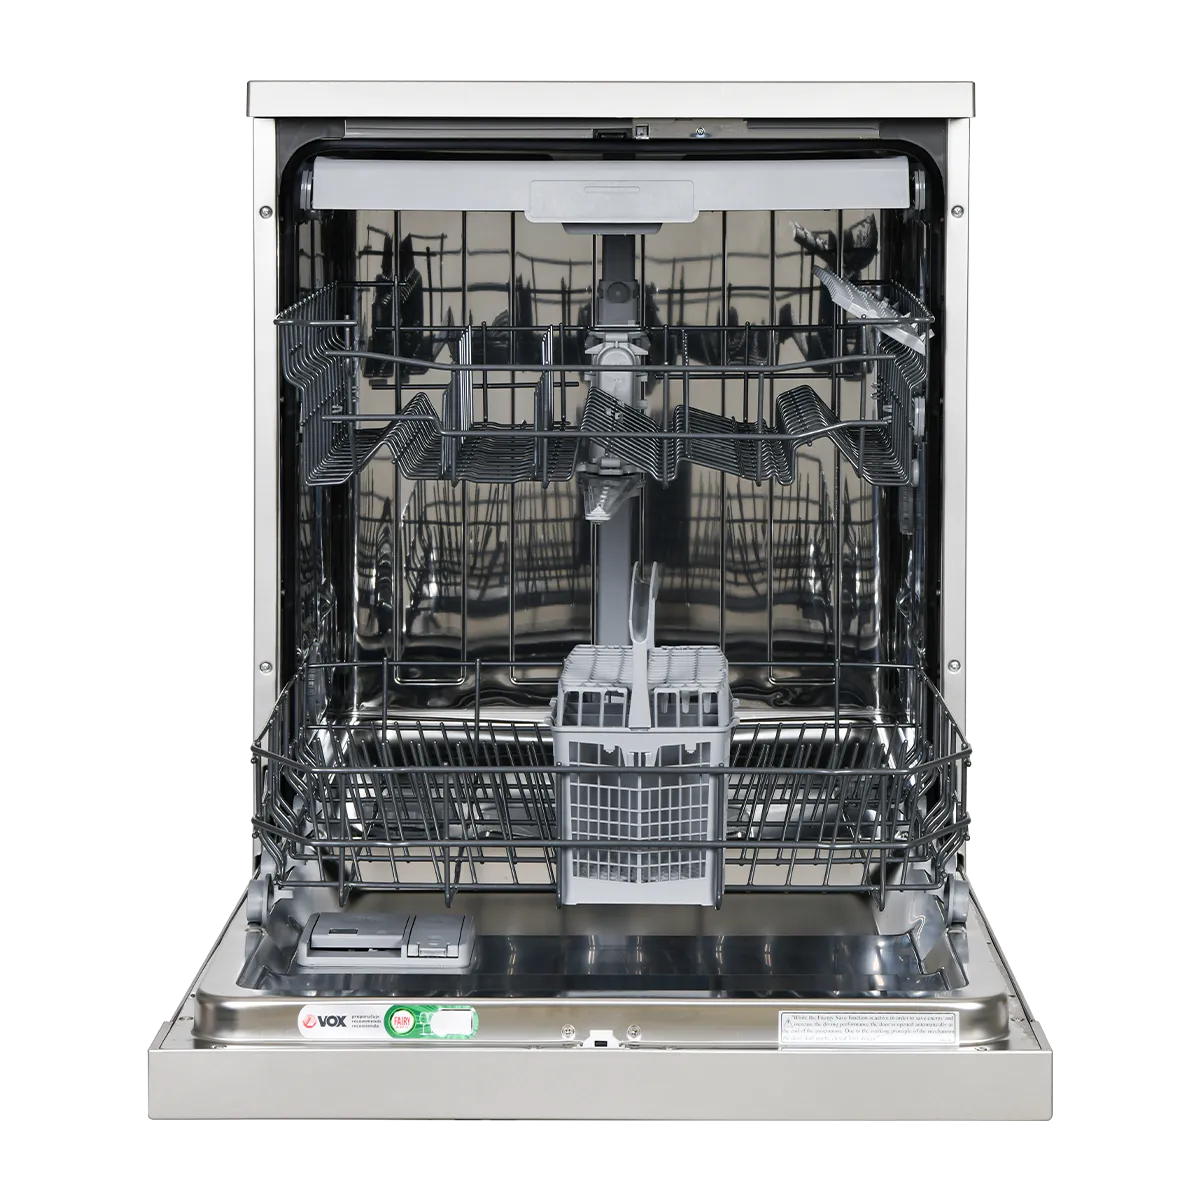 Dishwasher LC S13A1E YQ3E 